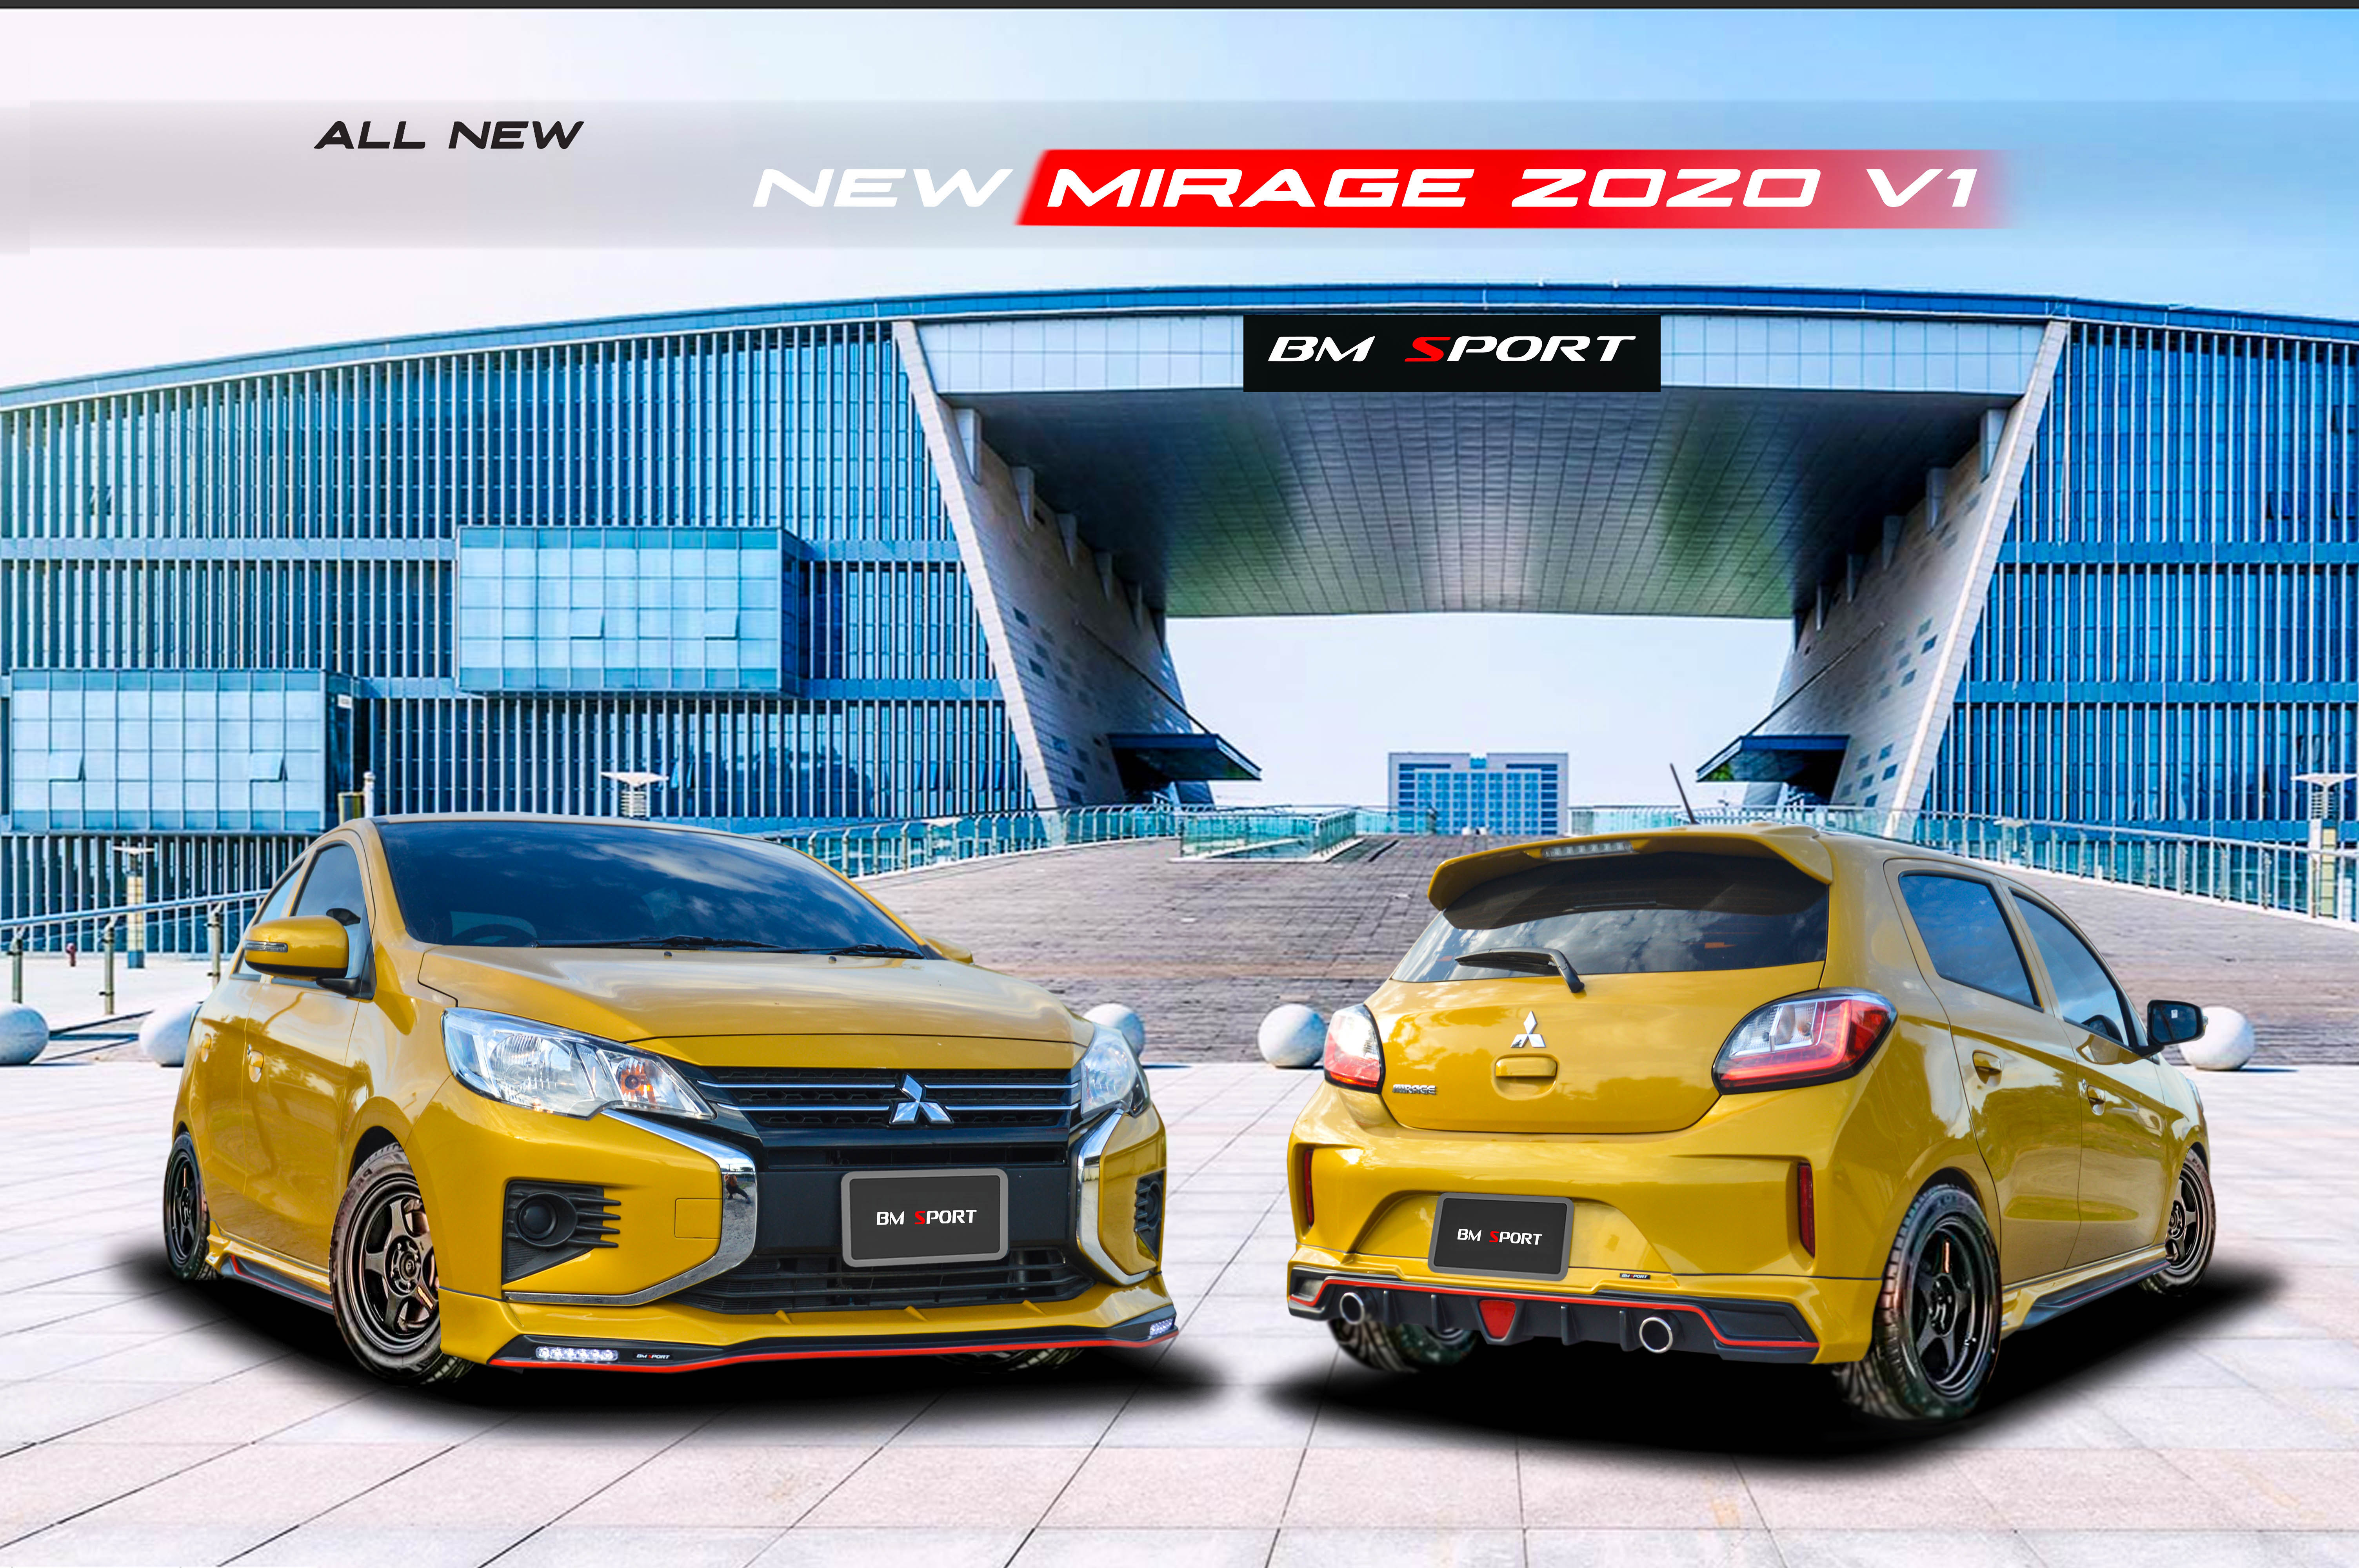  ชุดแต่ง NEW MIRAGE 2020 V1